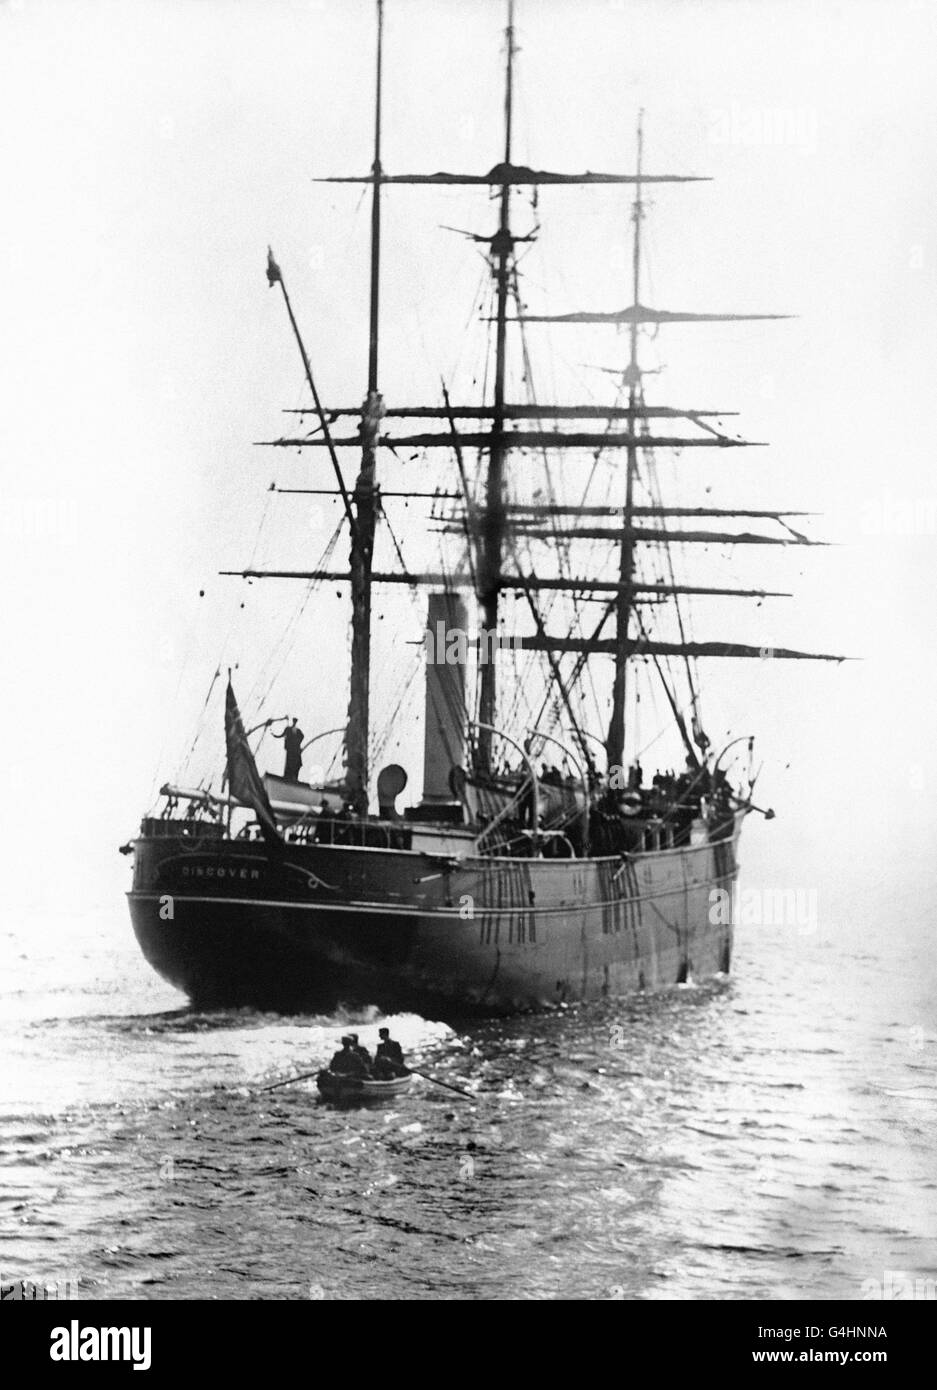 RRS Discovery è stata l'ultima nave in legno a tre alberi costruita nelle Isole Britanniche ed è stata lanciata il 21 marzo 1901, progettata per la ricerca antartica. La sua prima missione fu la spedizione nazionale antartica britannica, che trasportò Robert Falcon Scott e Ernest Shackleton nel loro primo viaggio di successo verso l'Antartico, conosciuto come la spedizione Discovery, nel 1901 Foto Stock